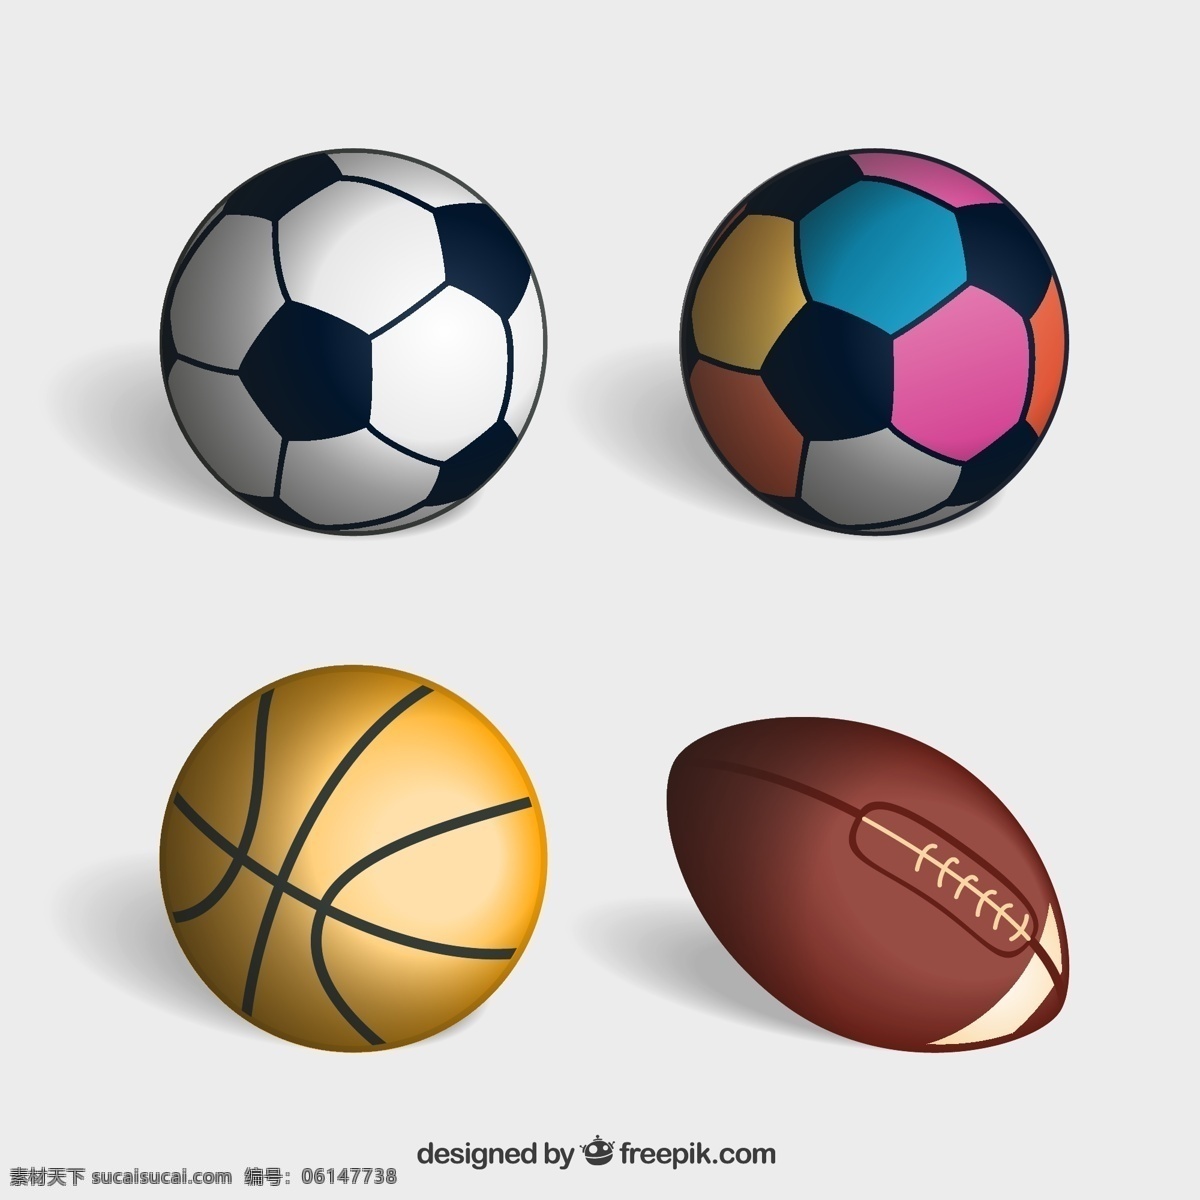 款 精美 球类 矢量 精美球类 矢量素材 球类矢量素材 球类素材 篮球矢量图 足球矢量图 橄榄球矢量图 排球矢量图 运动矢量图 运动素材 文化艺术 体育运动 白色